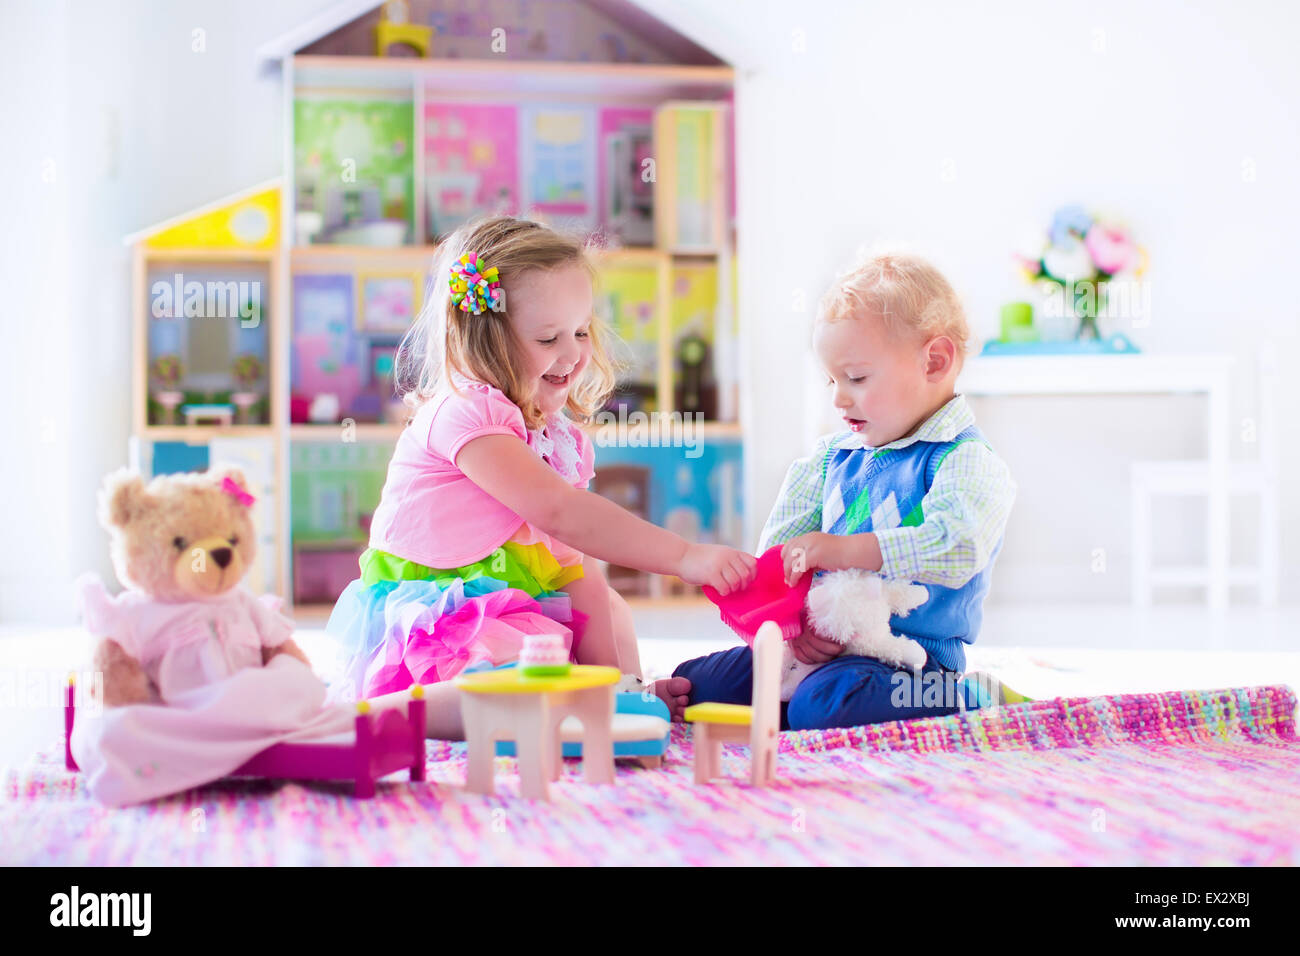 Kinder spielen mit Puppenhaus und tierischen Plüschtiere. Kinder sitzen auf einem rosa Teppich im Spiel zu Hause oder im Kindergarten. Stockfoto